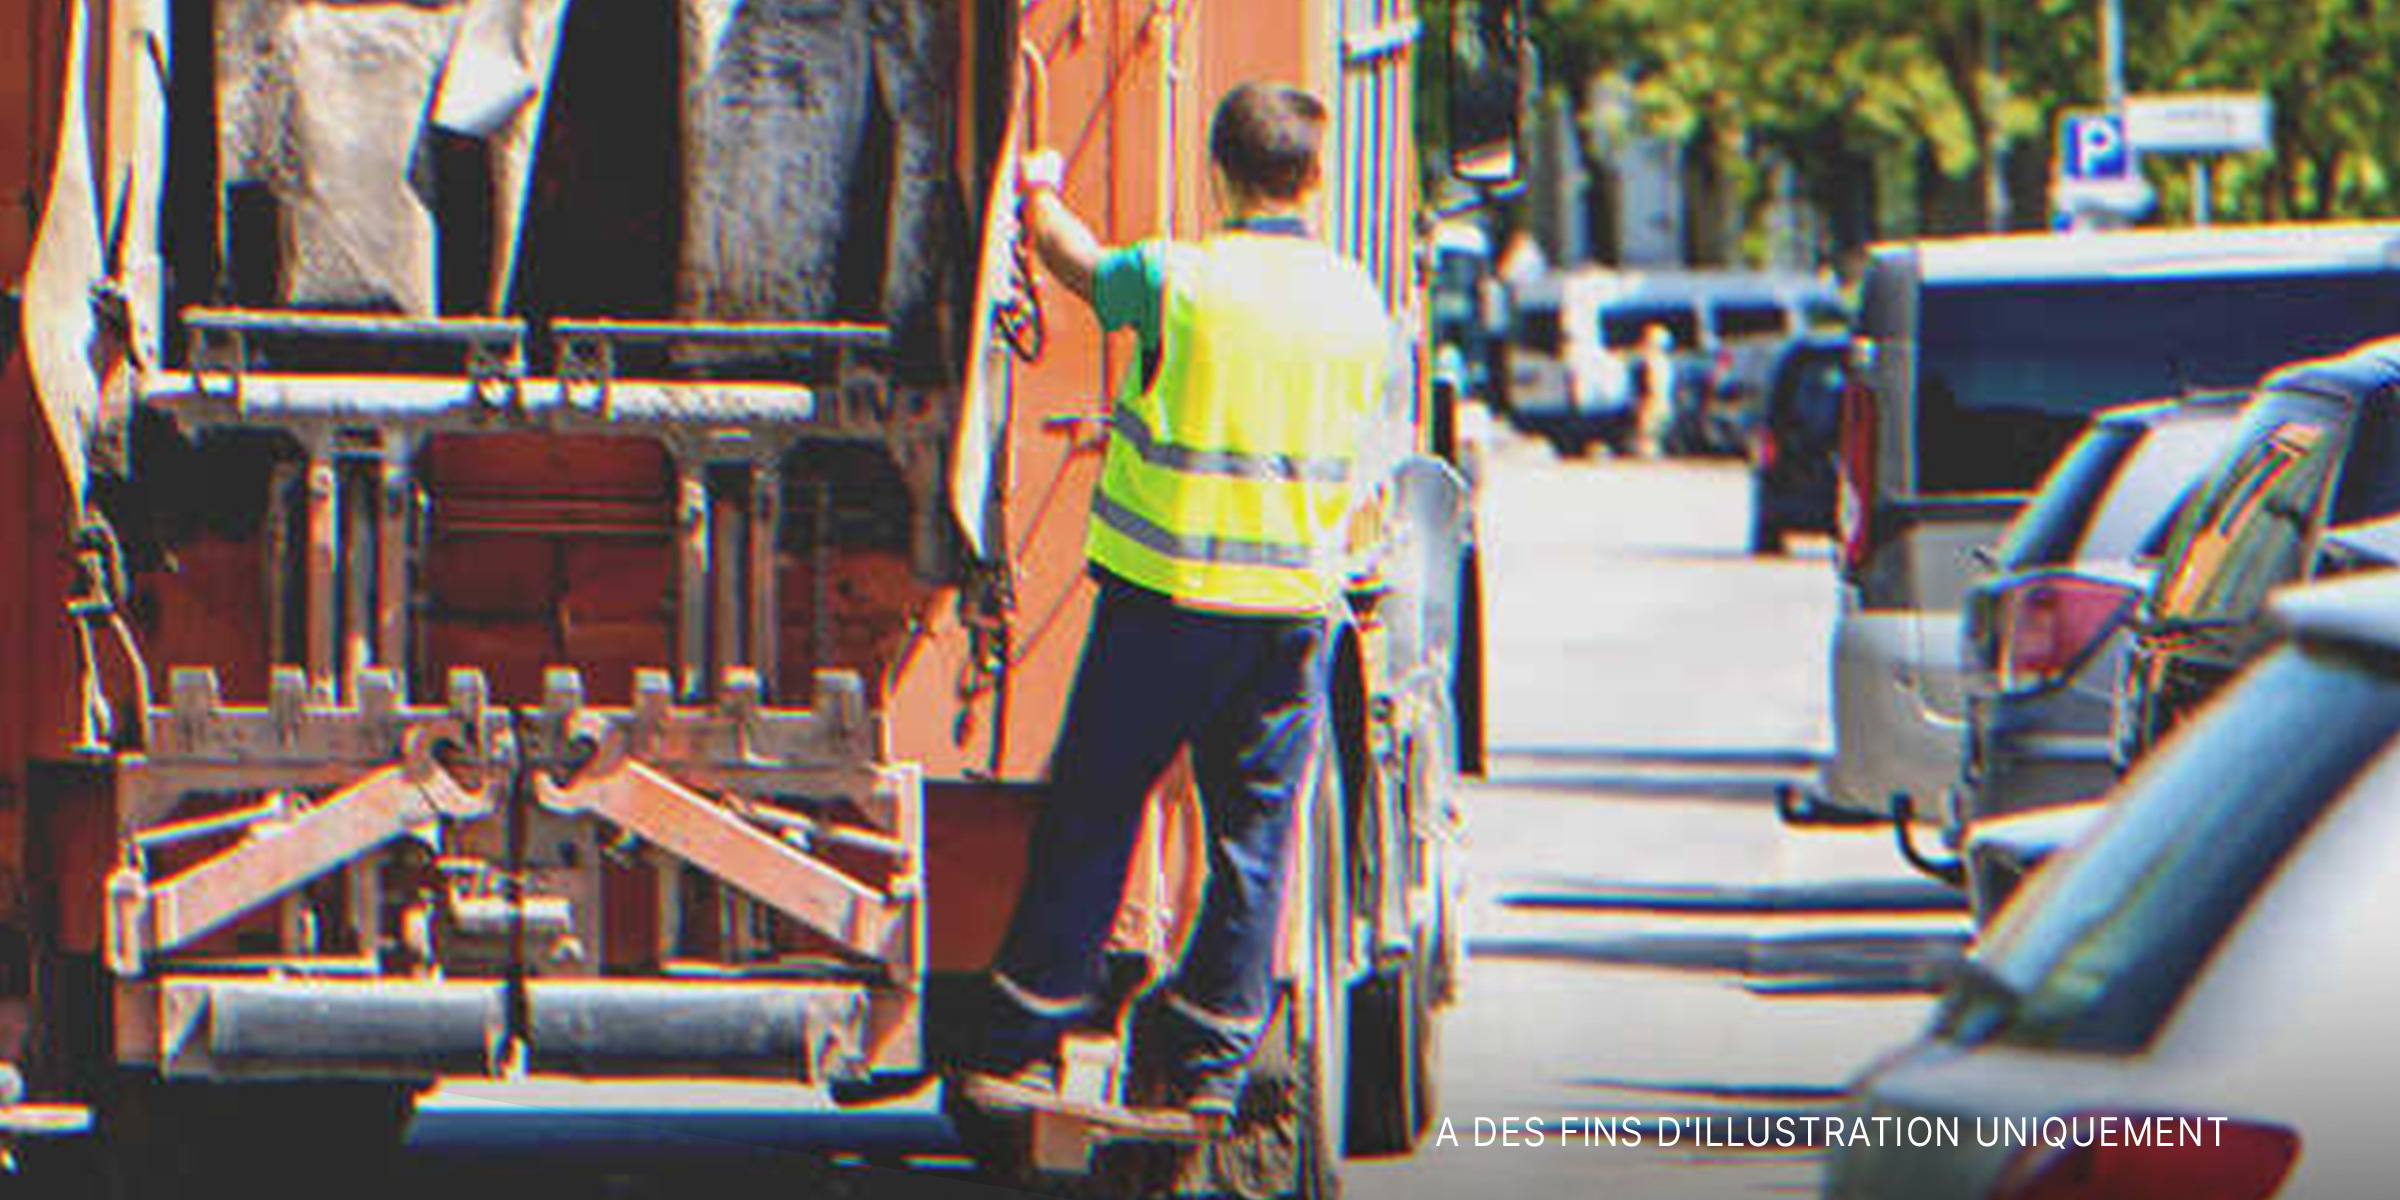 Un éboueur sur un camion à ordures | Source : Shutterstock